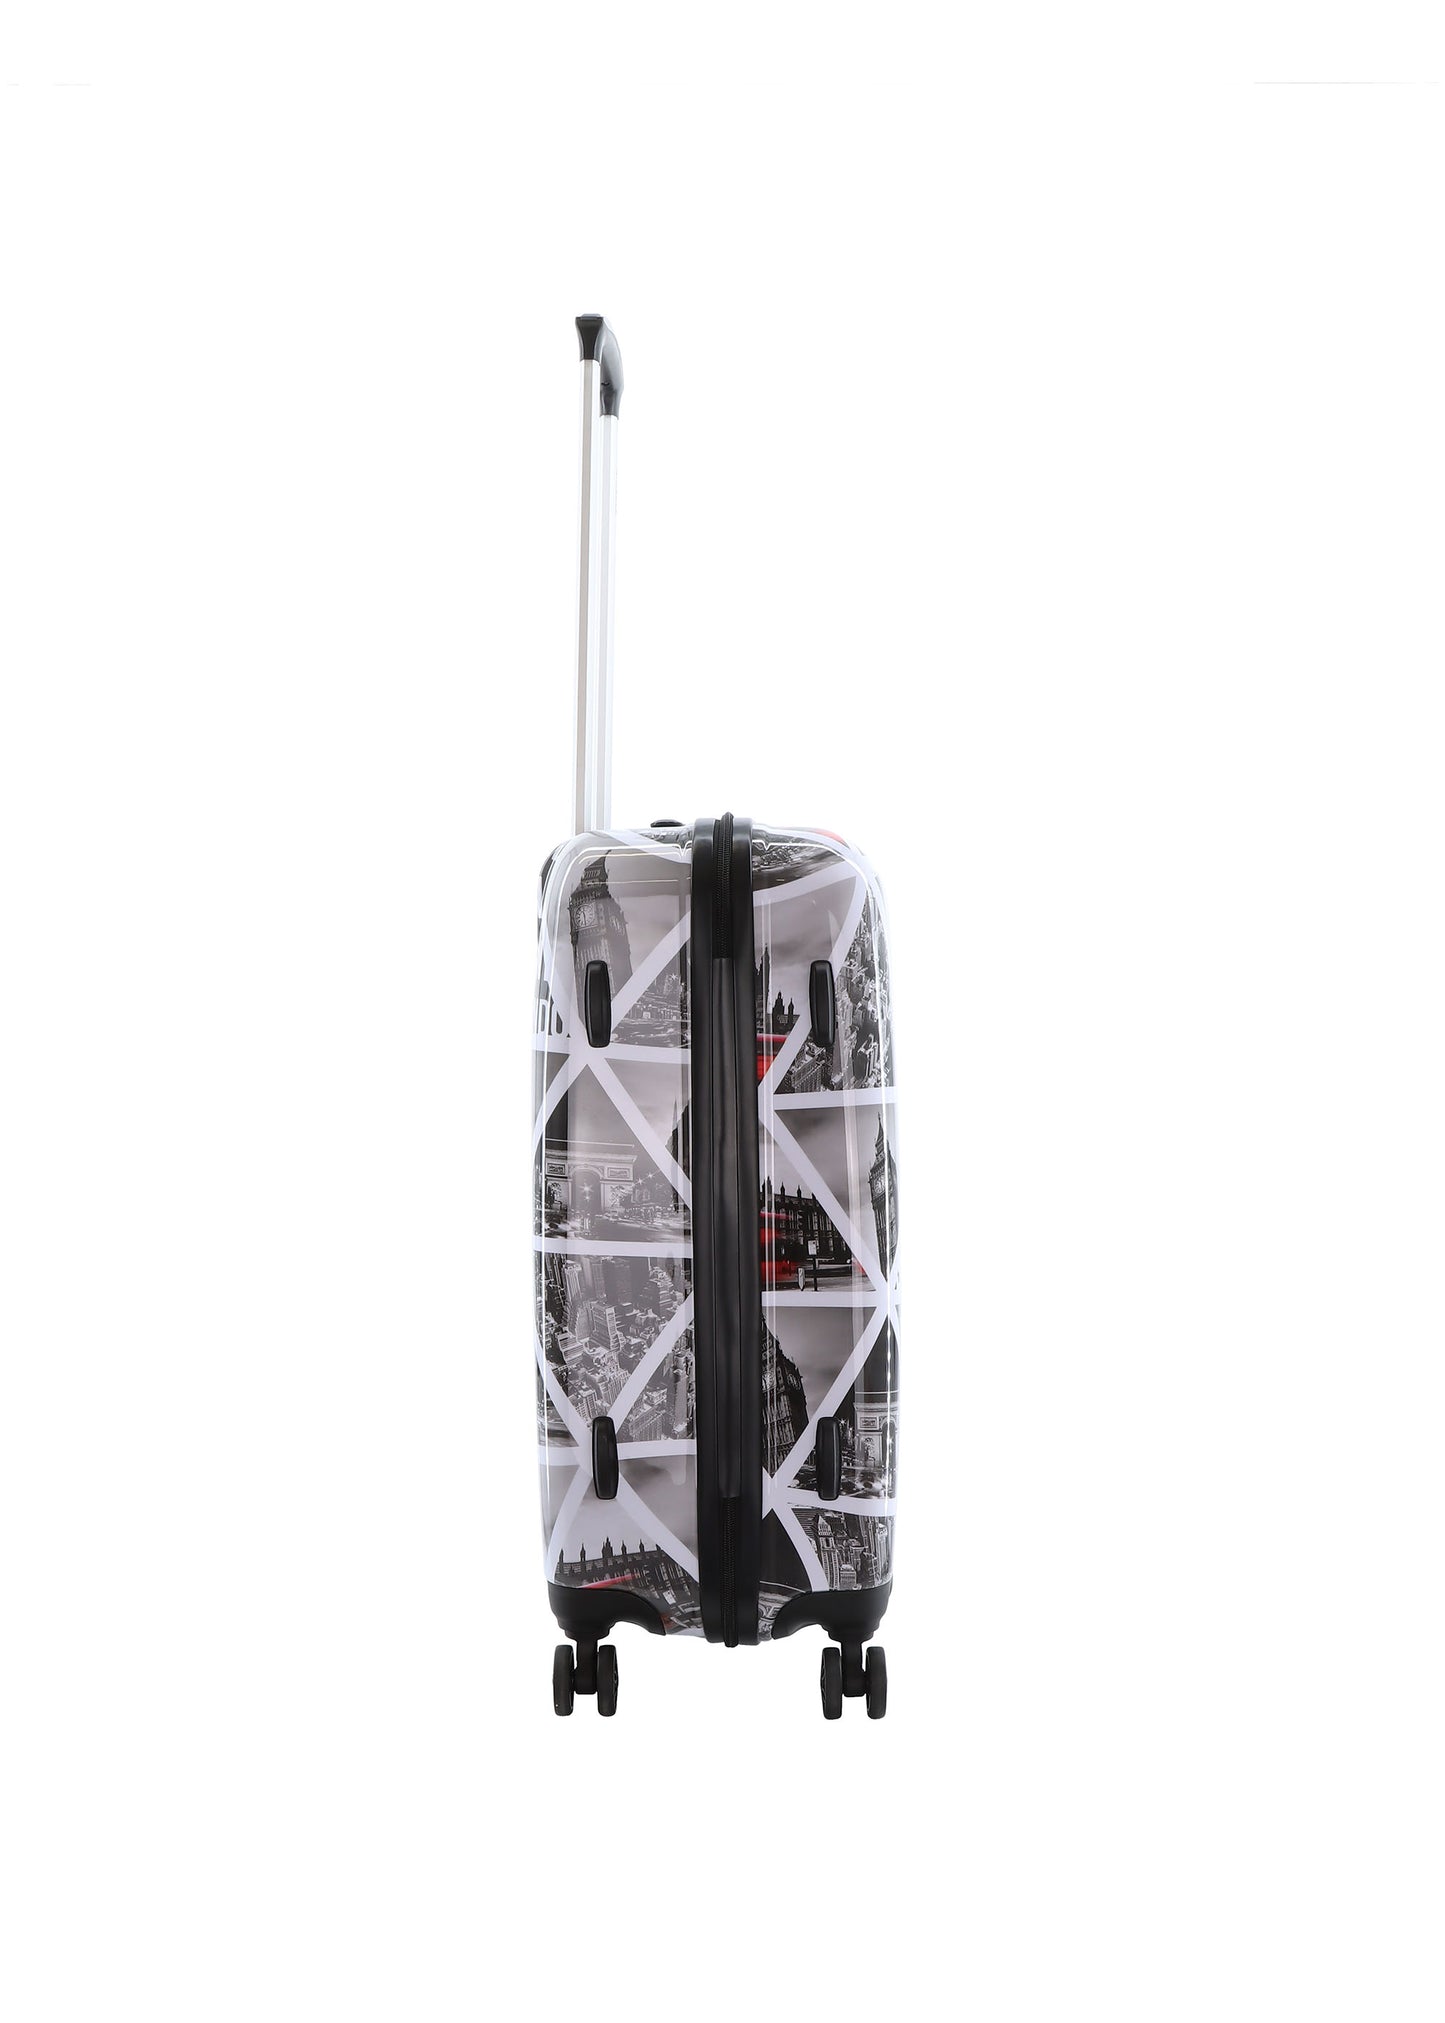 Saxoline Hard Case / Trolley / Travel Case - 64 cm (Moyen) - Imprimé Villes